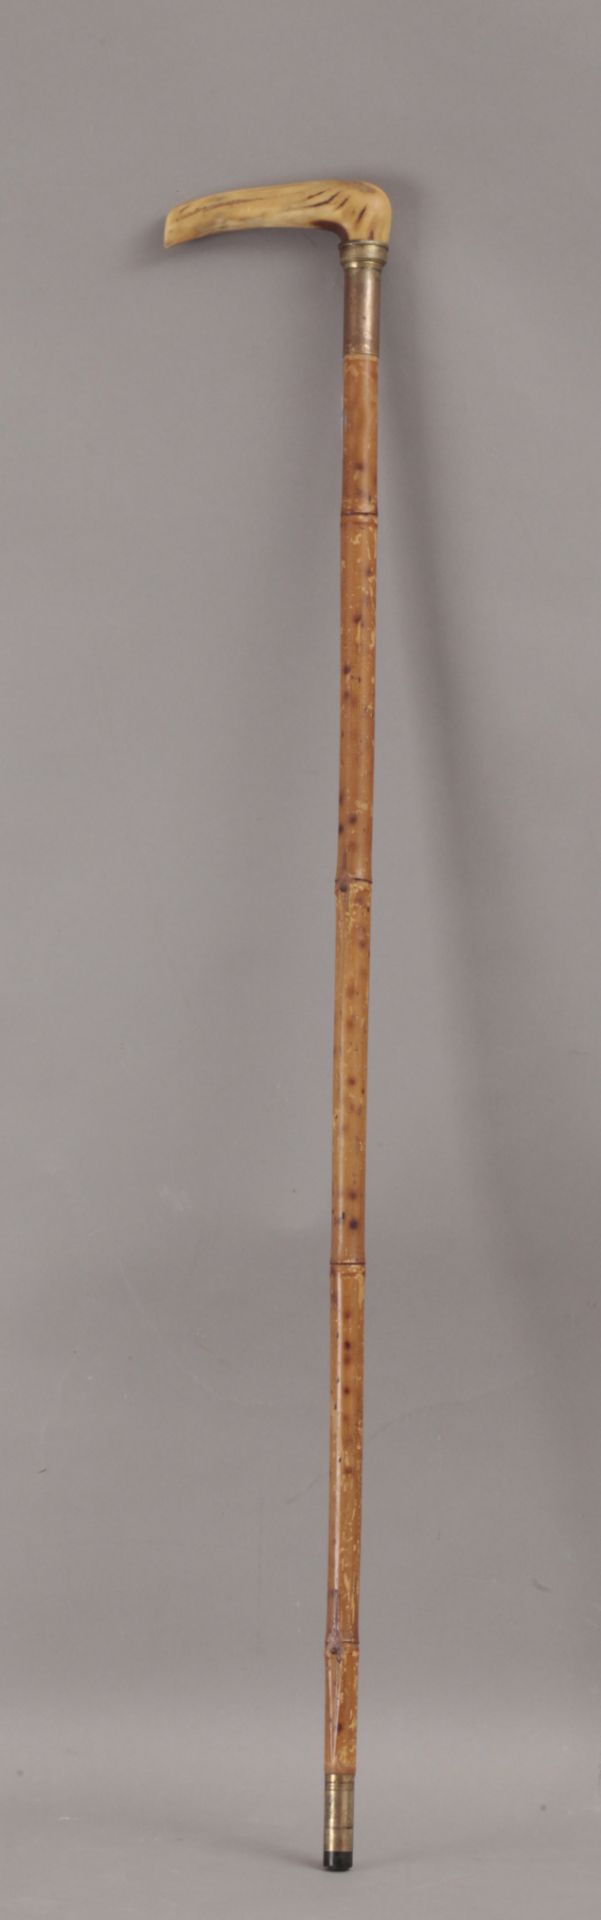 A 19th century walking stick - Bild 4 aus 8